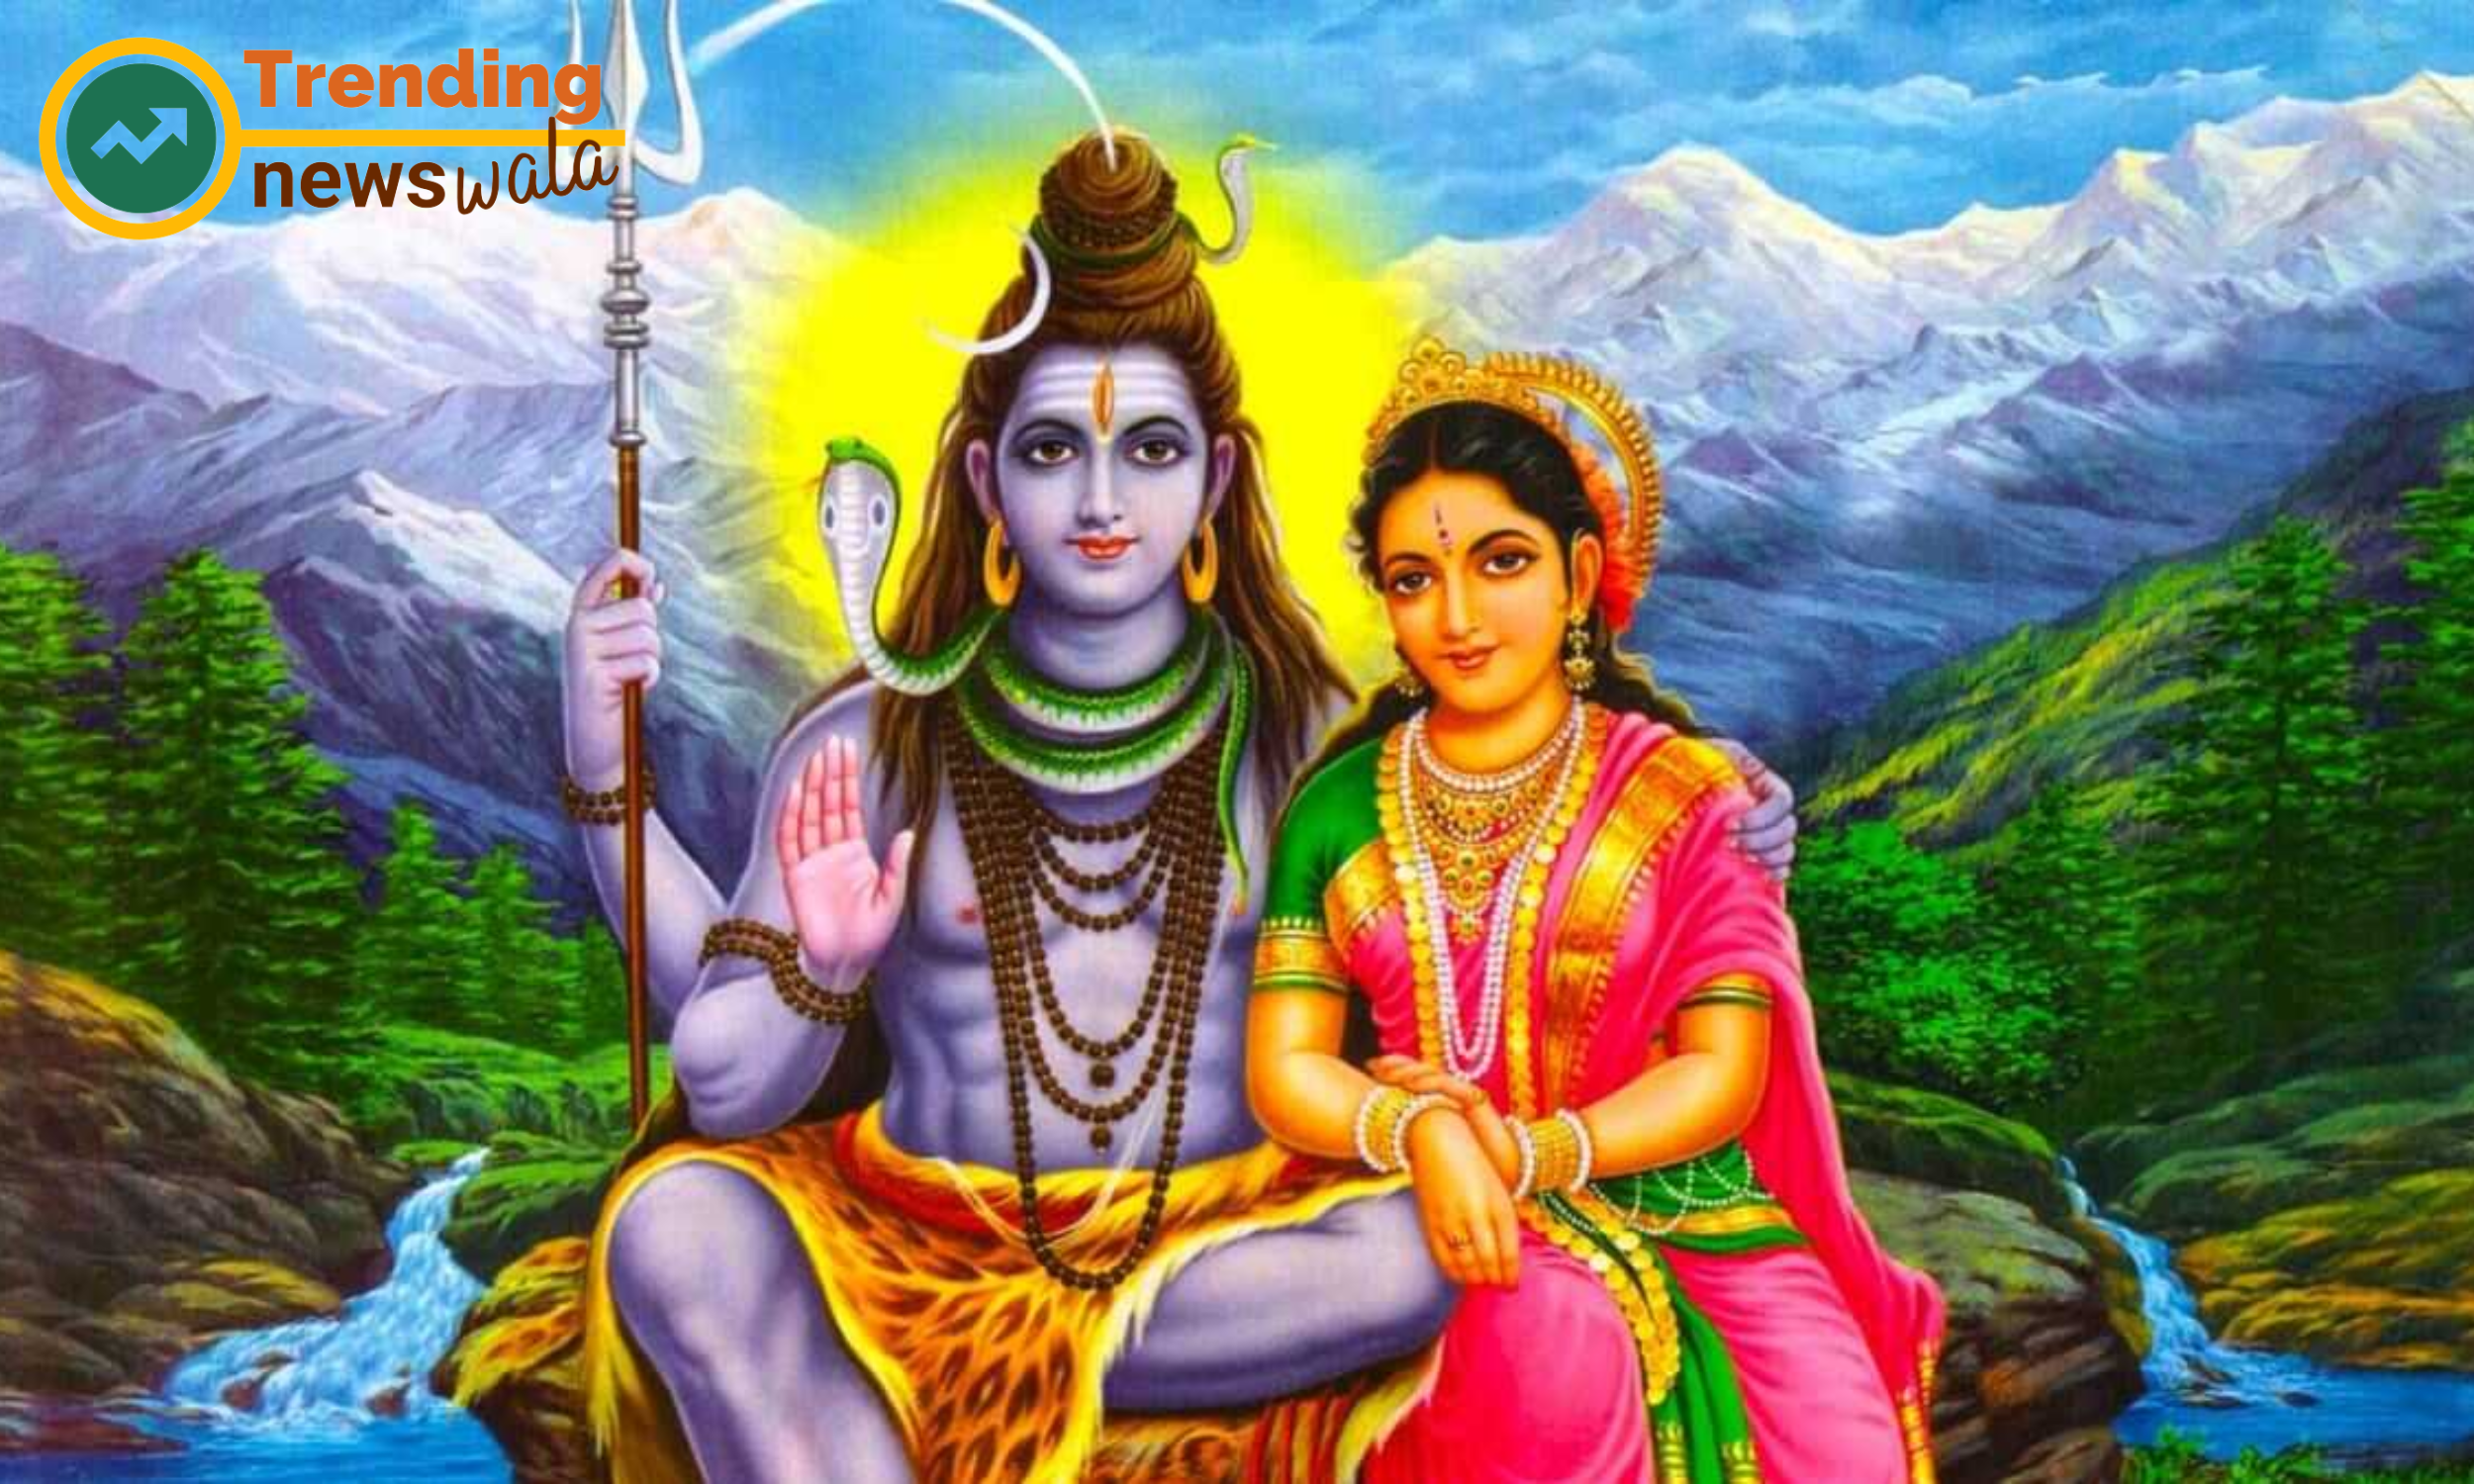 The divine interplay between Shiva and Shakti